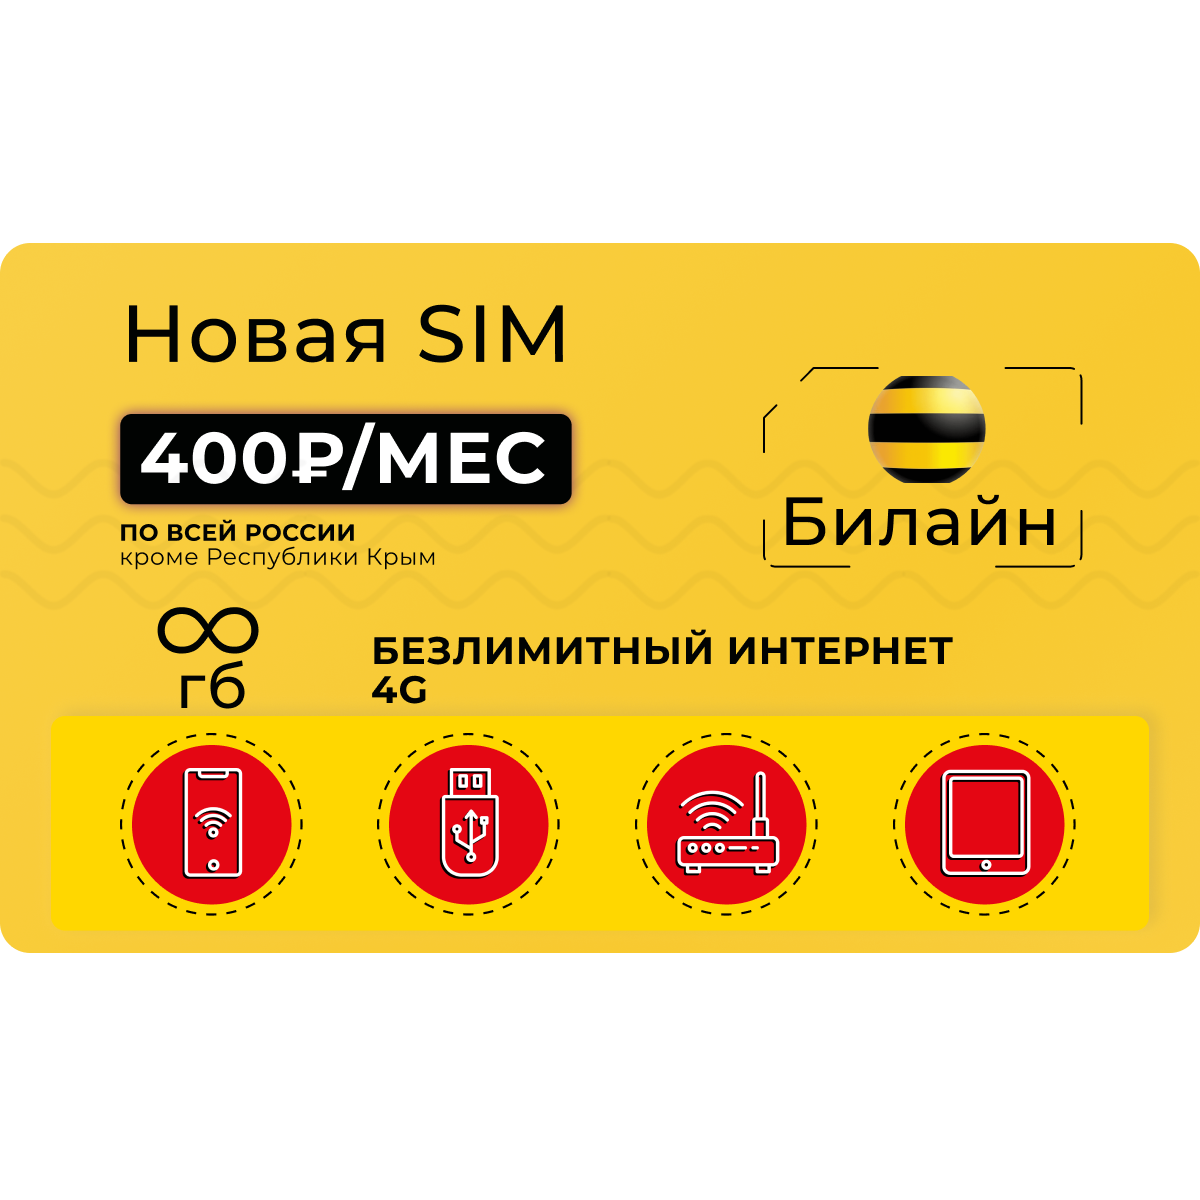 Сим-карта Билайн с безлимитным интернетом в 4G за 450 руб/мес - купить  тариф по выгодной цене | Безлимитик.ру